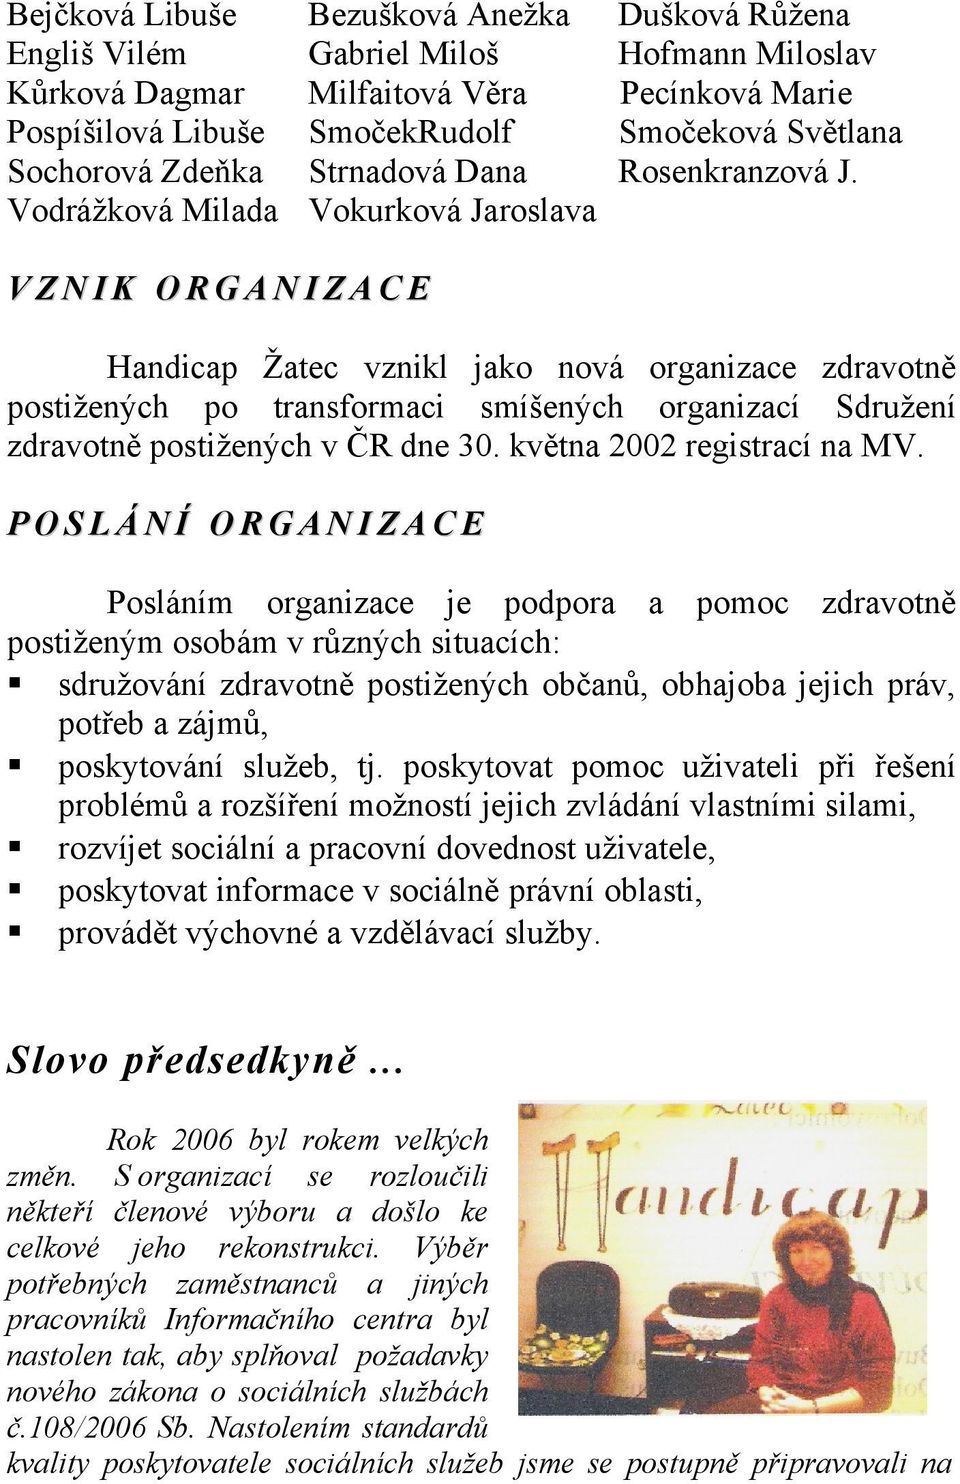 VZNIK ORGANIZACE Handicap Žatec vznikl jako nová organizace zdravotně postižených po transformaci smíšených organizací Sdružení zdravotně postižených v ČR dne 30. května 2002 registrací na MV.